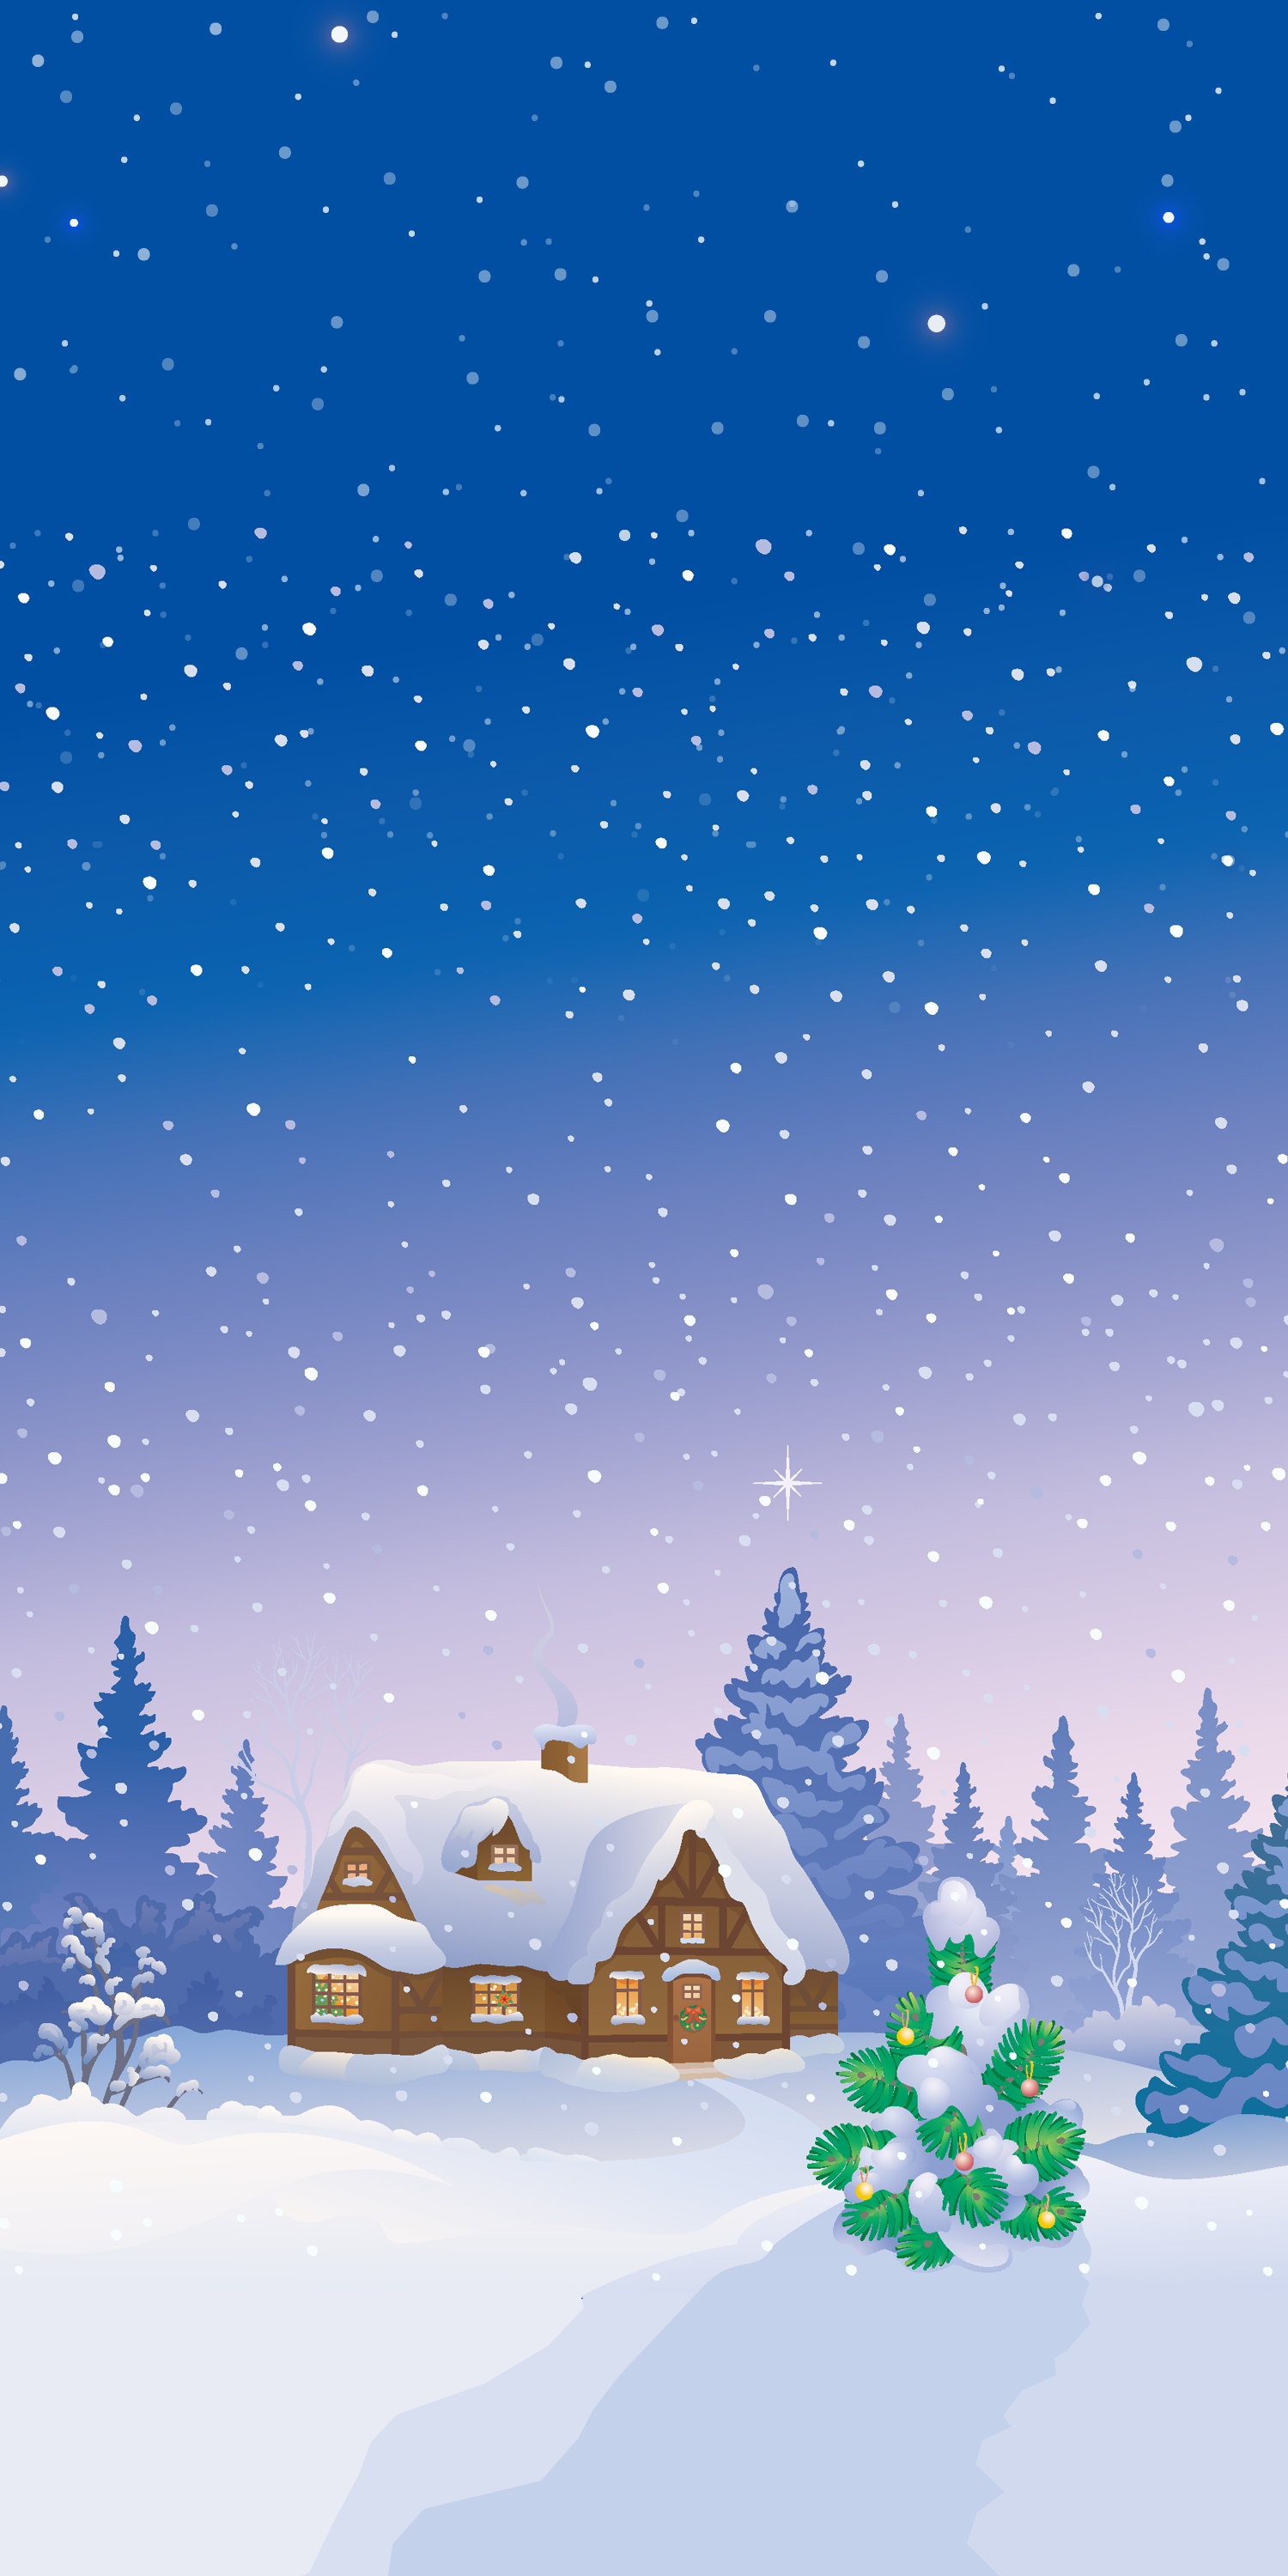 雪の壁紙,冬,空,雪,木,クリスマス・イブ